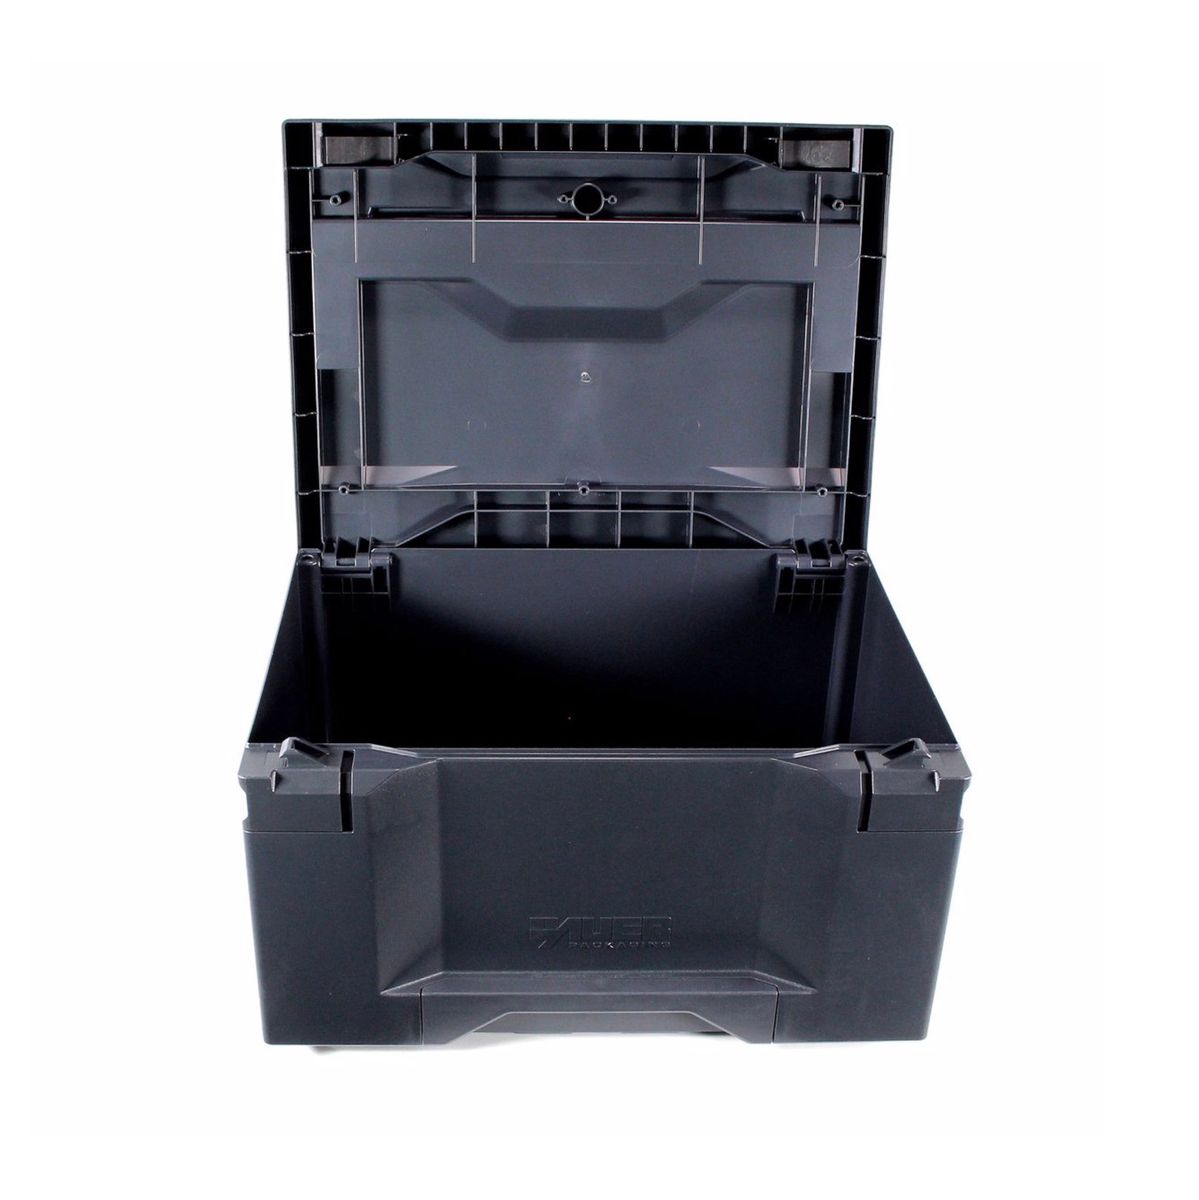 Prebena 2XR-J50 Luftdruck Druckluftnagler 4 - 7 Bar + Koffer + 8000x J-BOX Stauchkopfnägel / Brads + Makbox